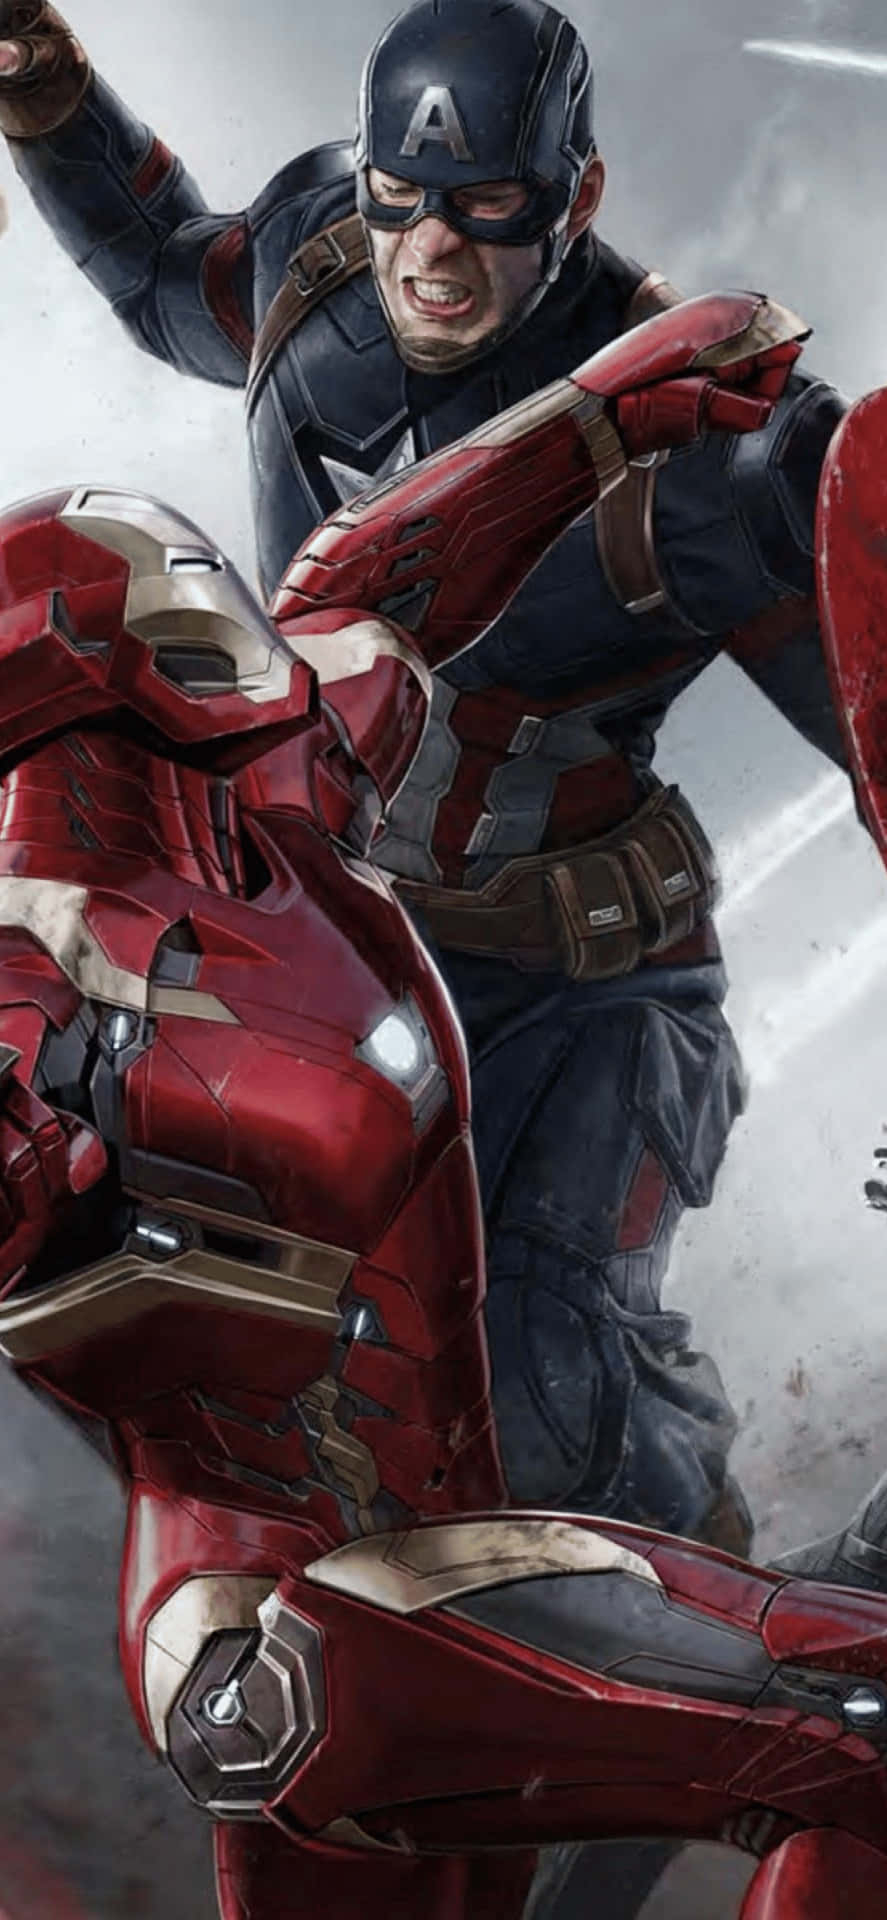 Iphonexs Max Bakgrund Med Marvels Iron Man Och Captain America